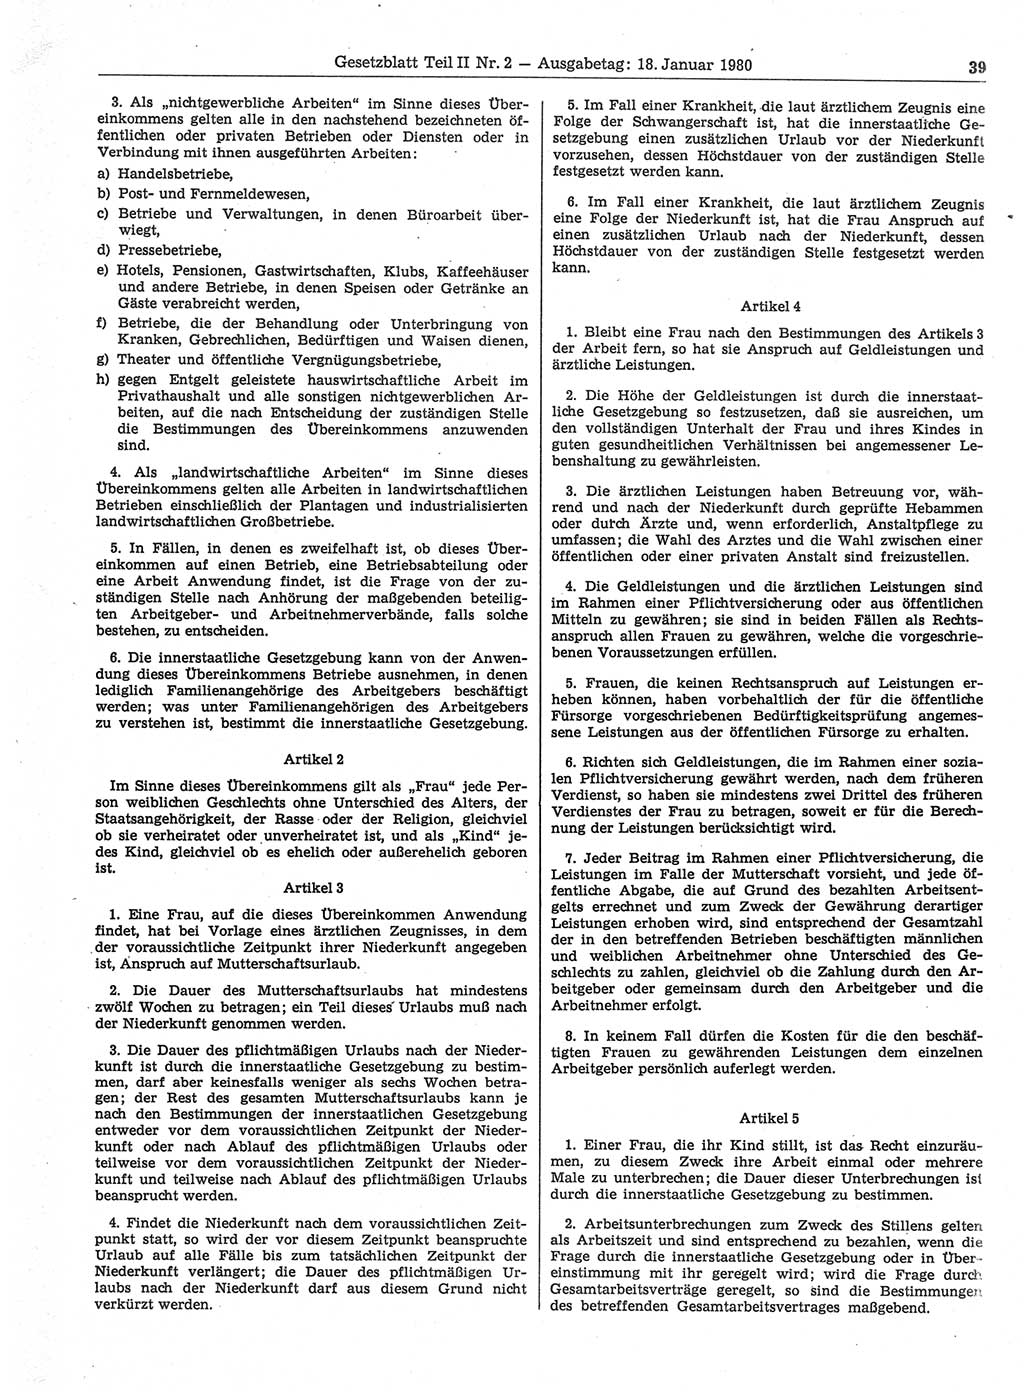 Gesetzblatt (GBl.) der Deutschen Demokratischen Republik (DDR) Teil ⅠⅠ 1980, Seite 39 (GBl. DDR ⅠⅠ 1980, S. 39)